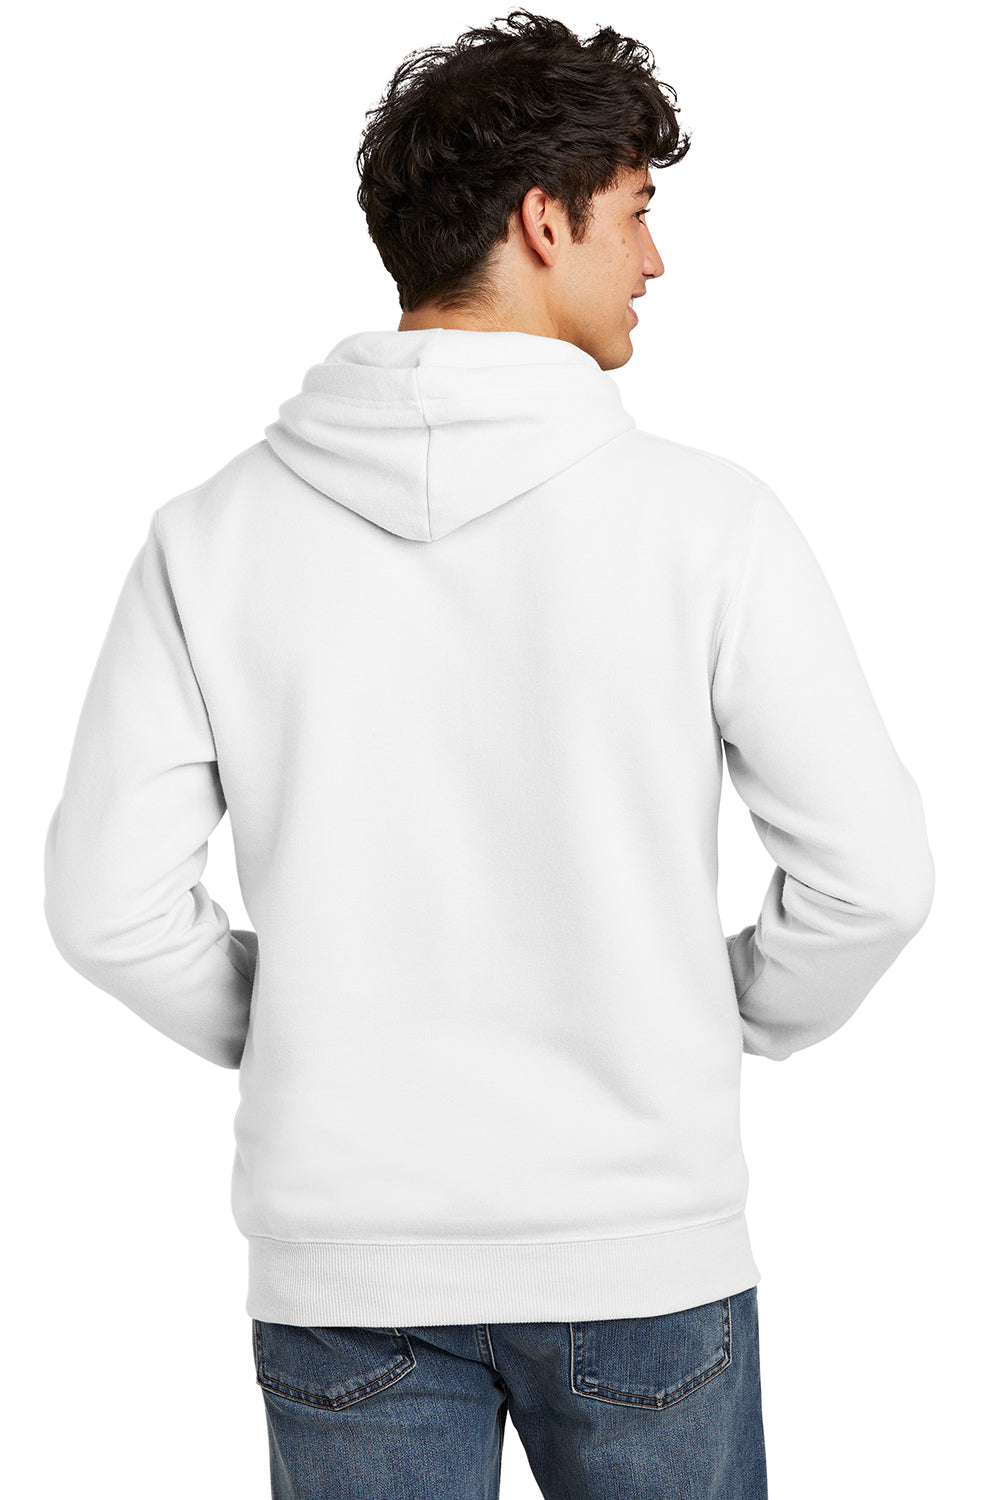 Jerzees 700M Mens Eco Premium Hooded Sweatshirt Hoodie White Back